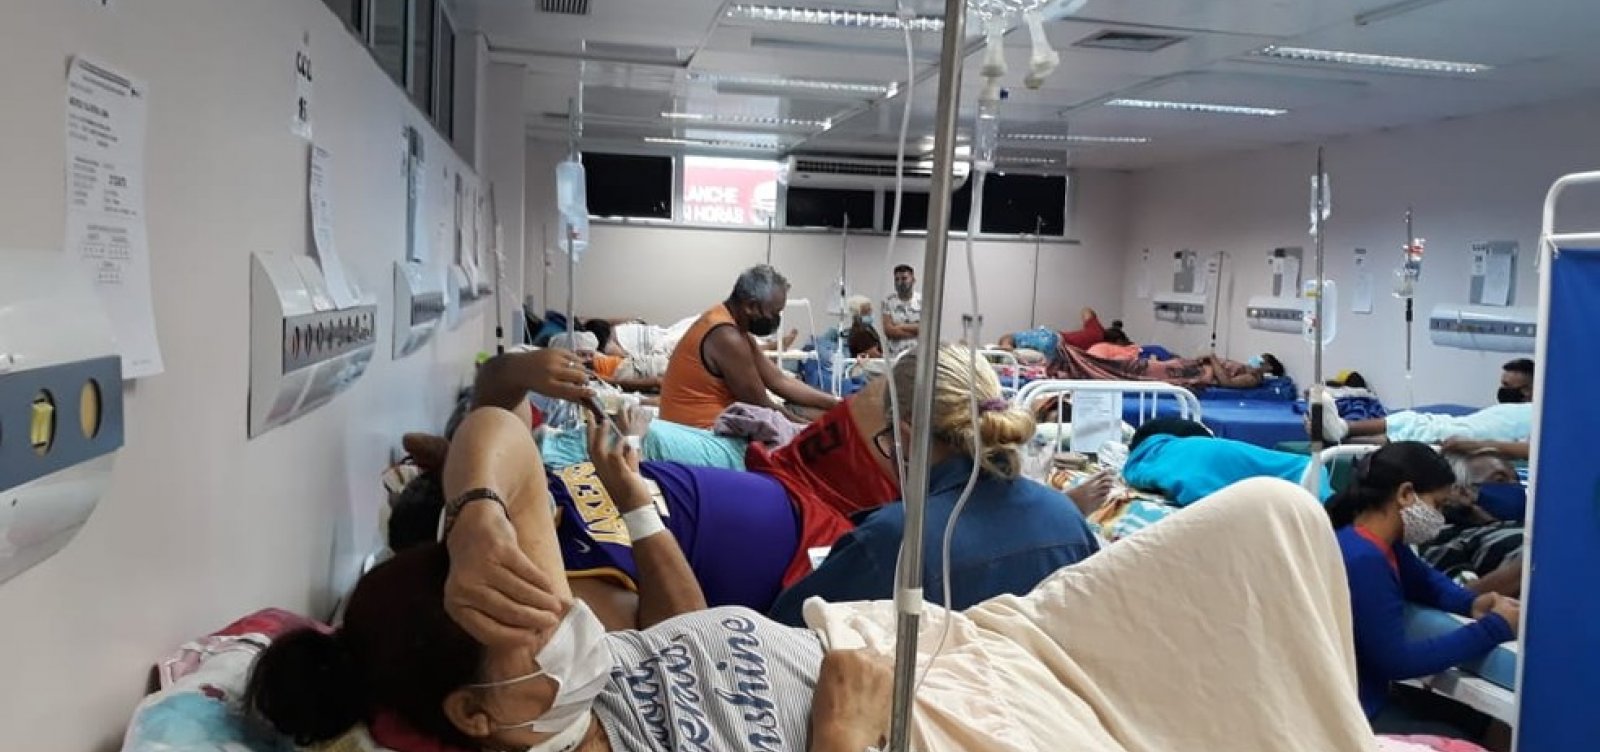 Imprensa internacional repercute caos nos hospitais de Manaus